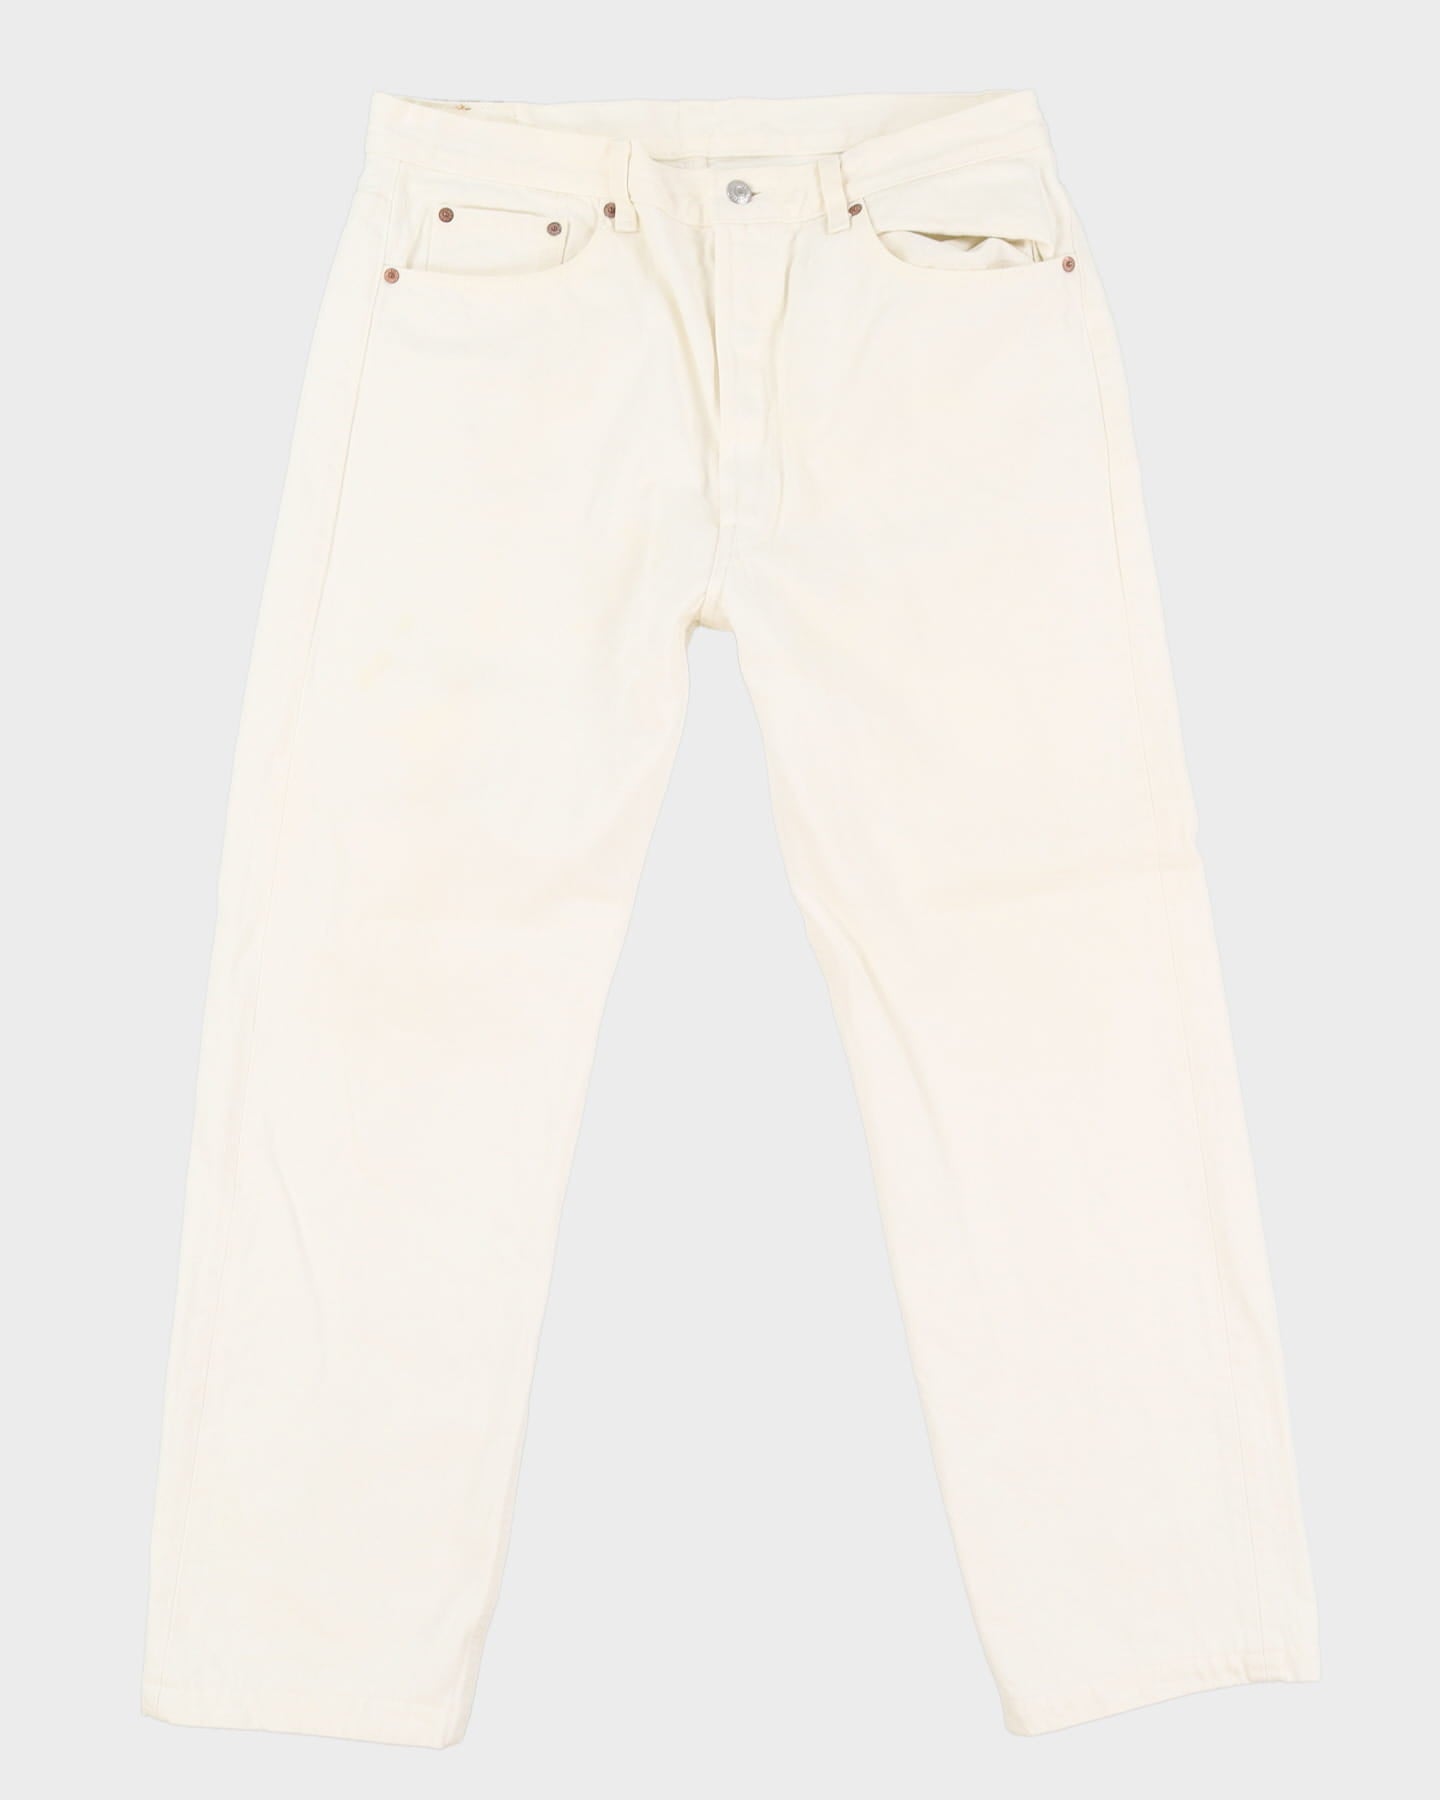 Vintage 80s Levi's 501 White Denim Jeans - W36 L30